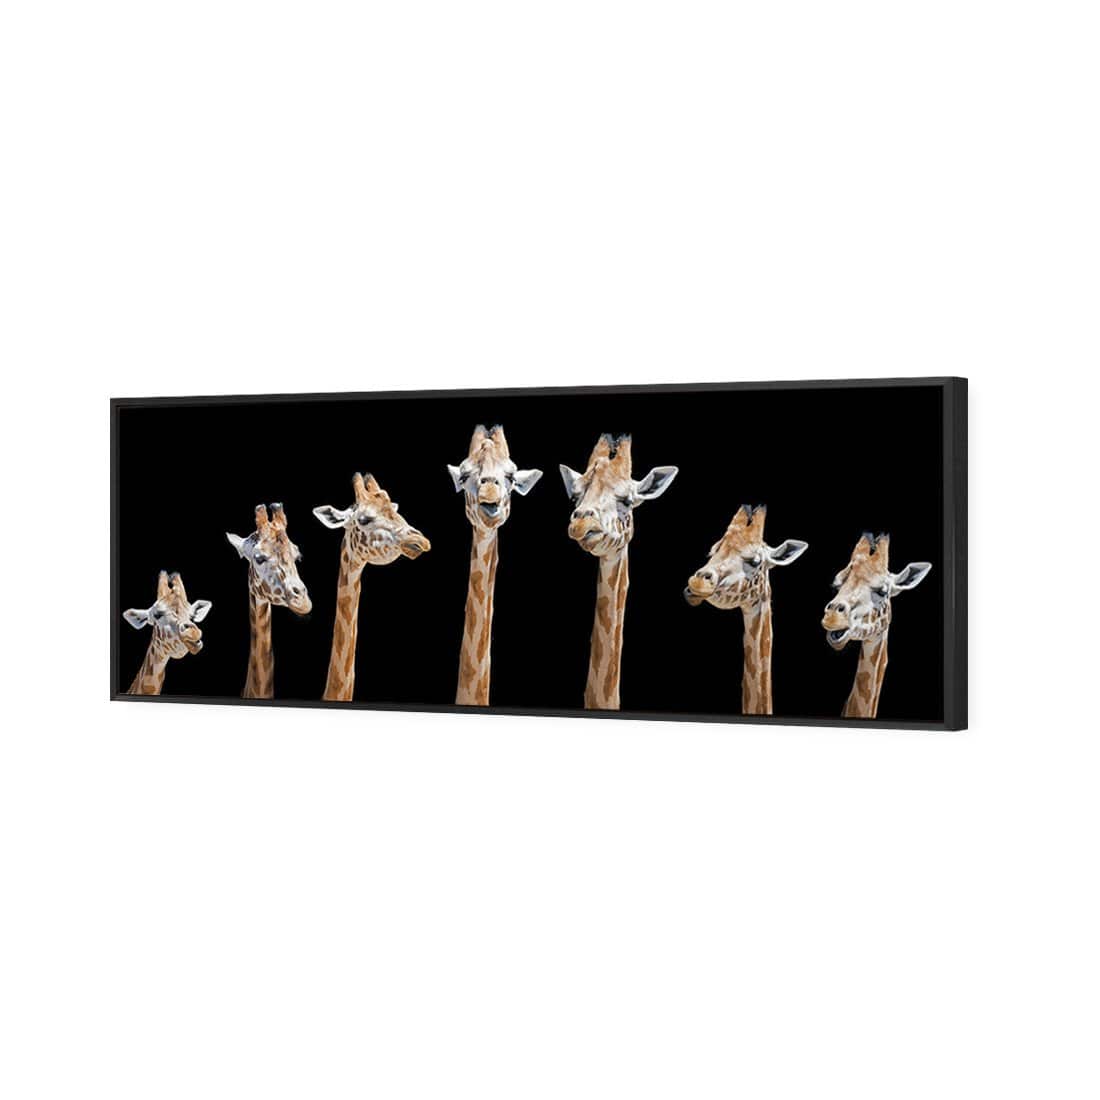 Laughing Giraffes Canvas Art-Canvas-Wall Art Designs-60x20cm-Canvas - Black Frame-Wall Art Designs